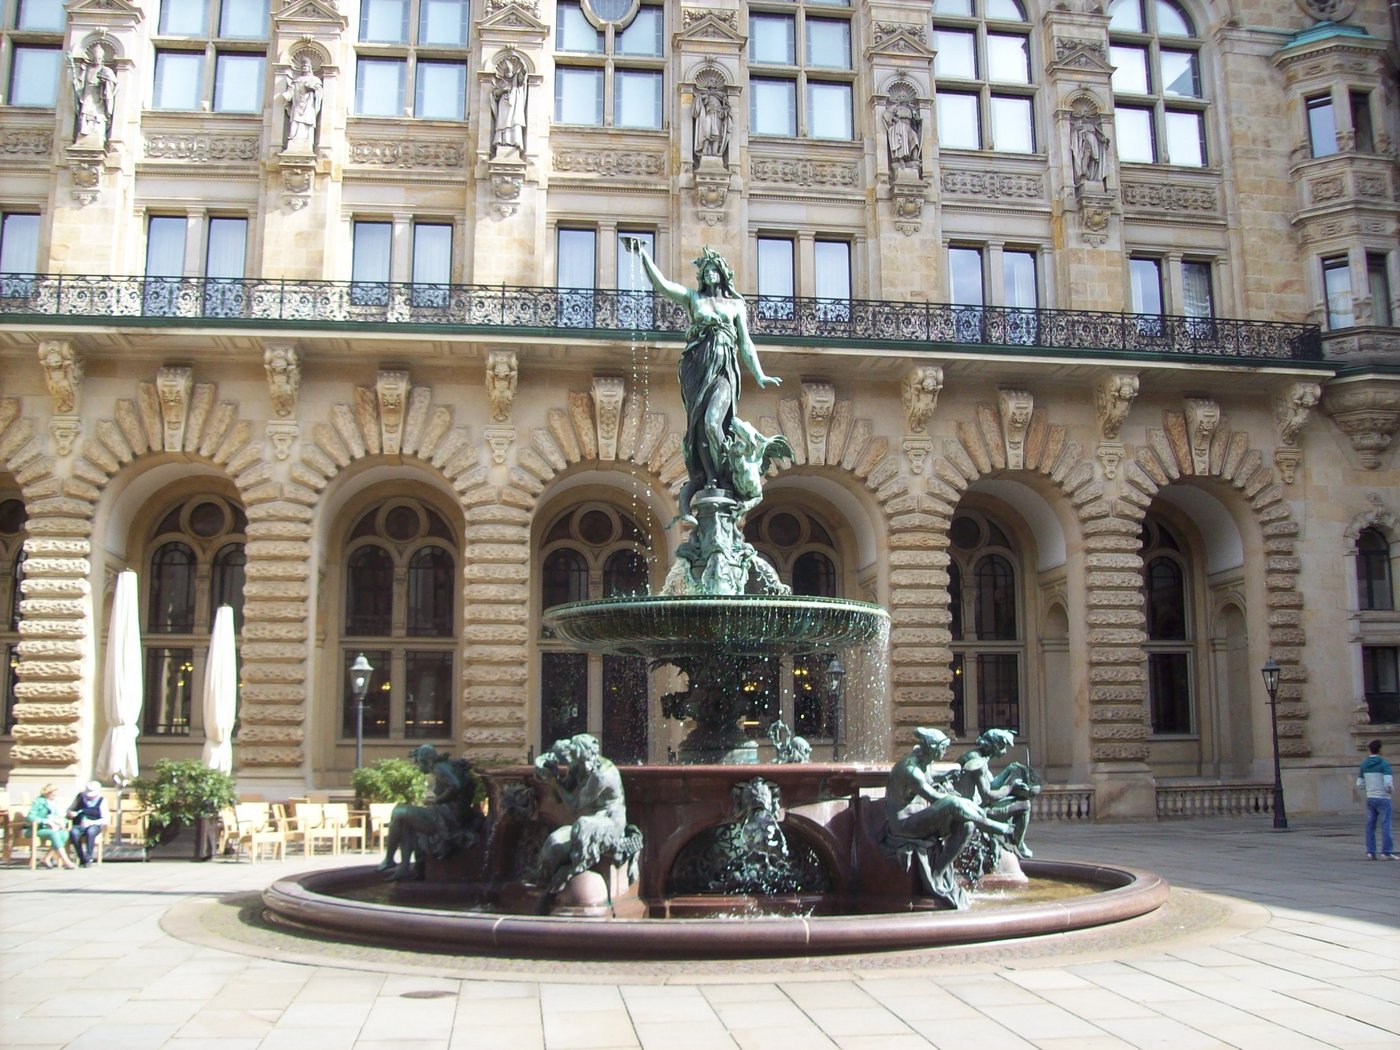 Das Bild zeigt den Hygieia-Brunnen auf dem Innenhof des Rathauses